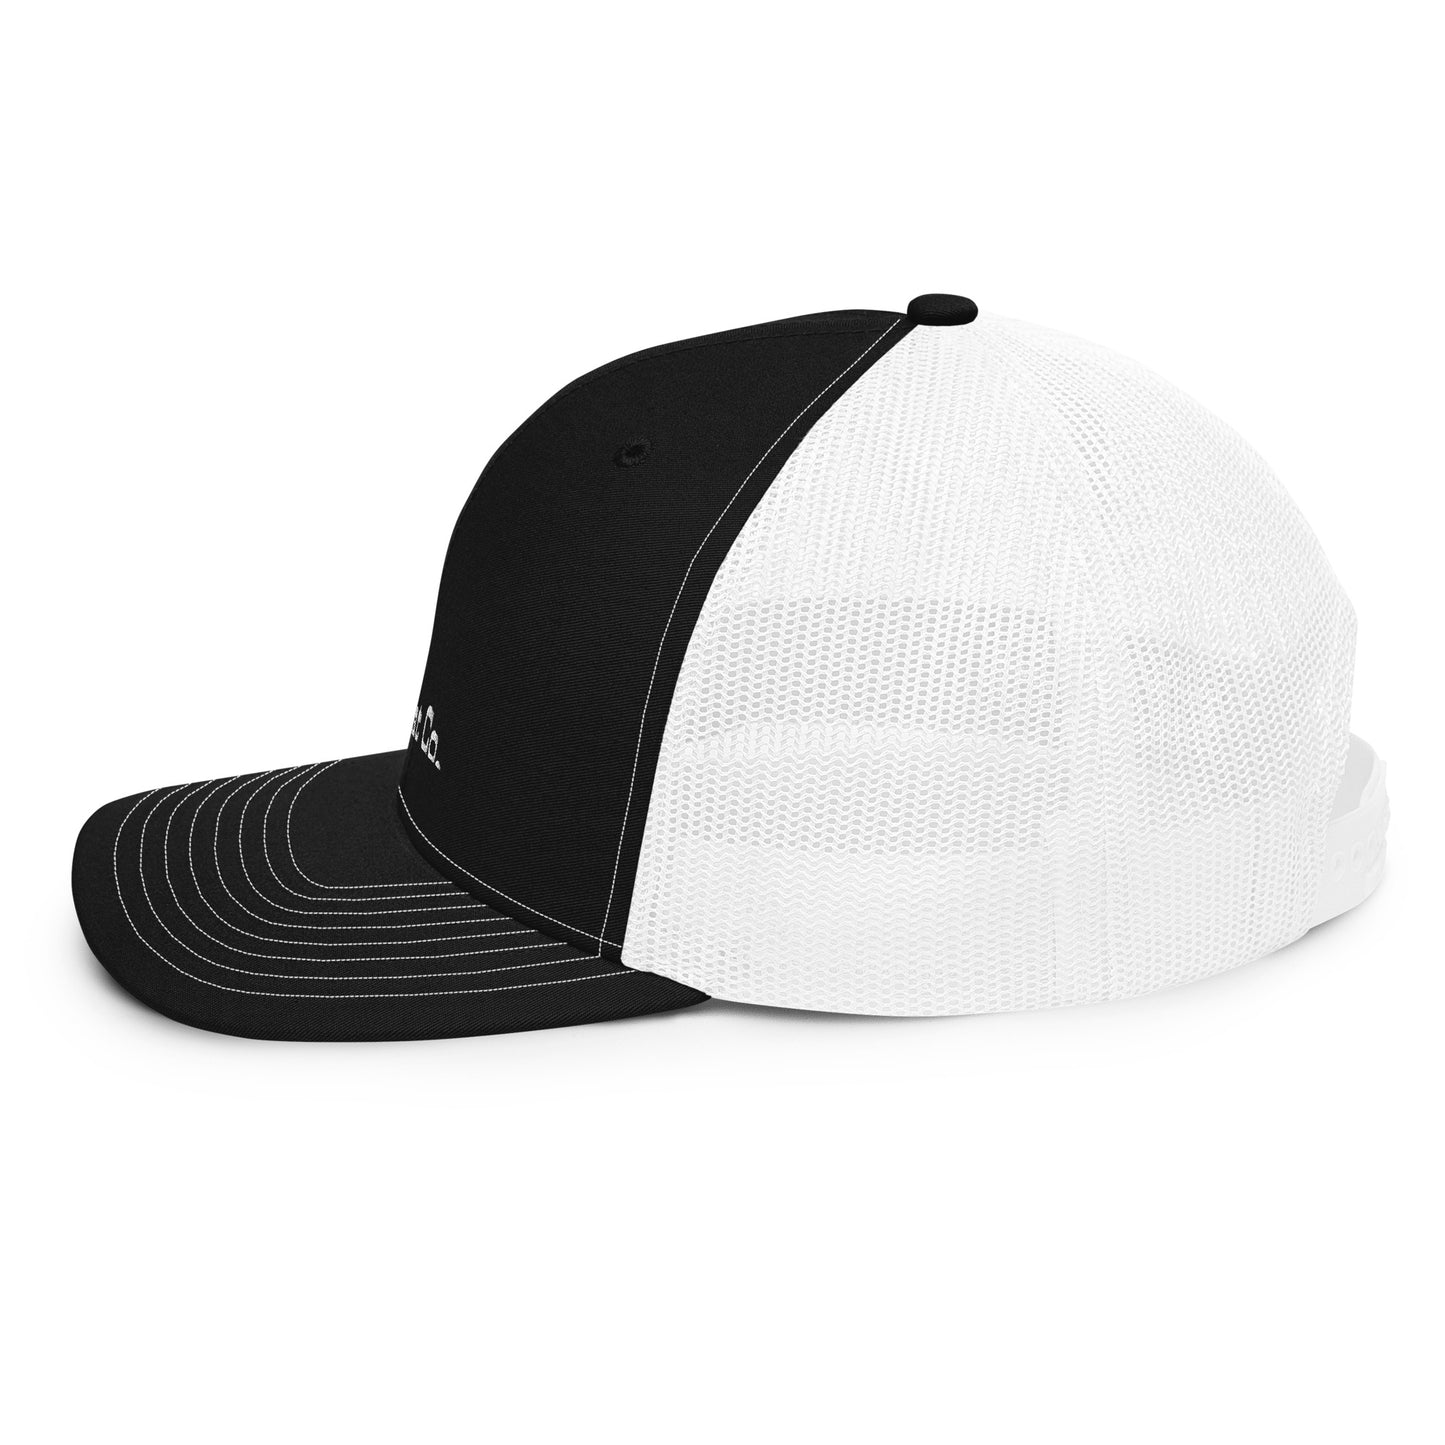 Centered Logo Trucker Hat